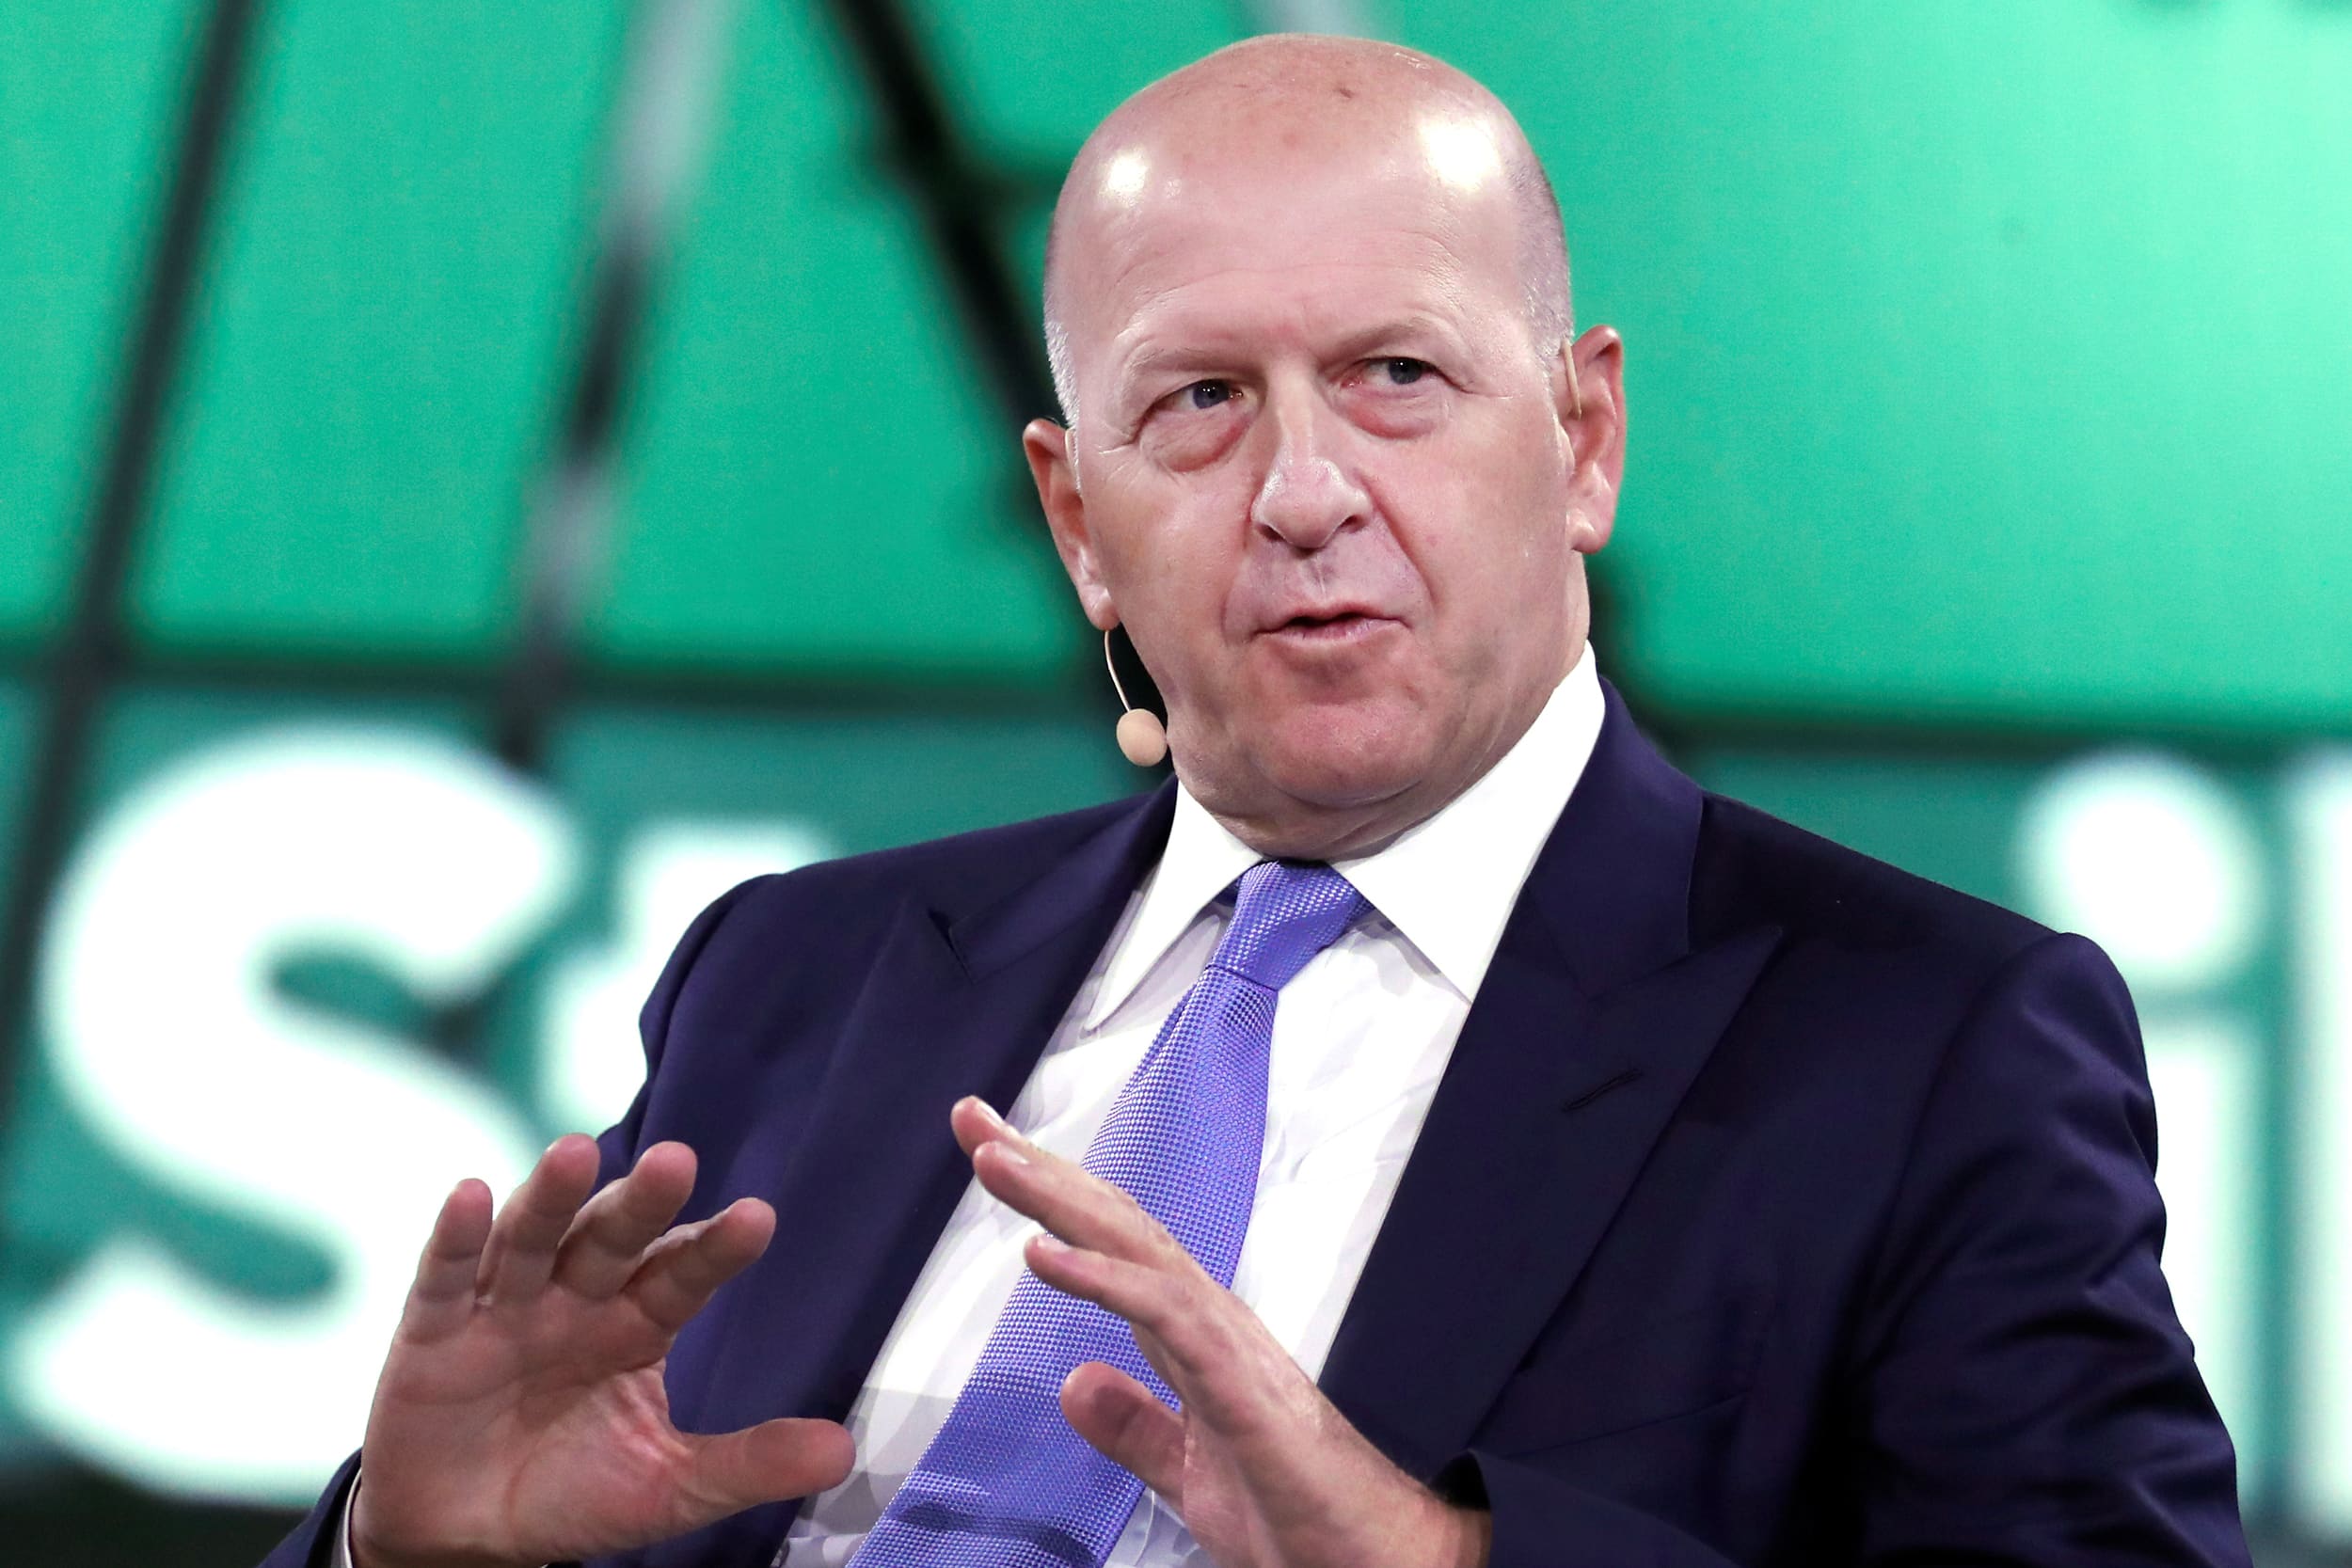 Goldman CEO addresses junior bankers’ complaints after survey goes viral